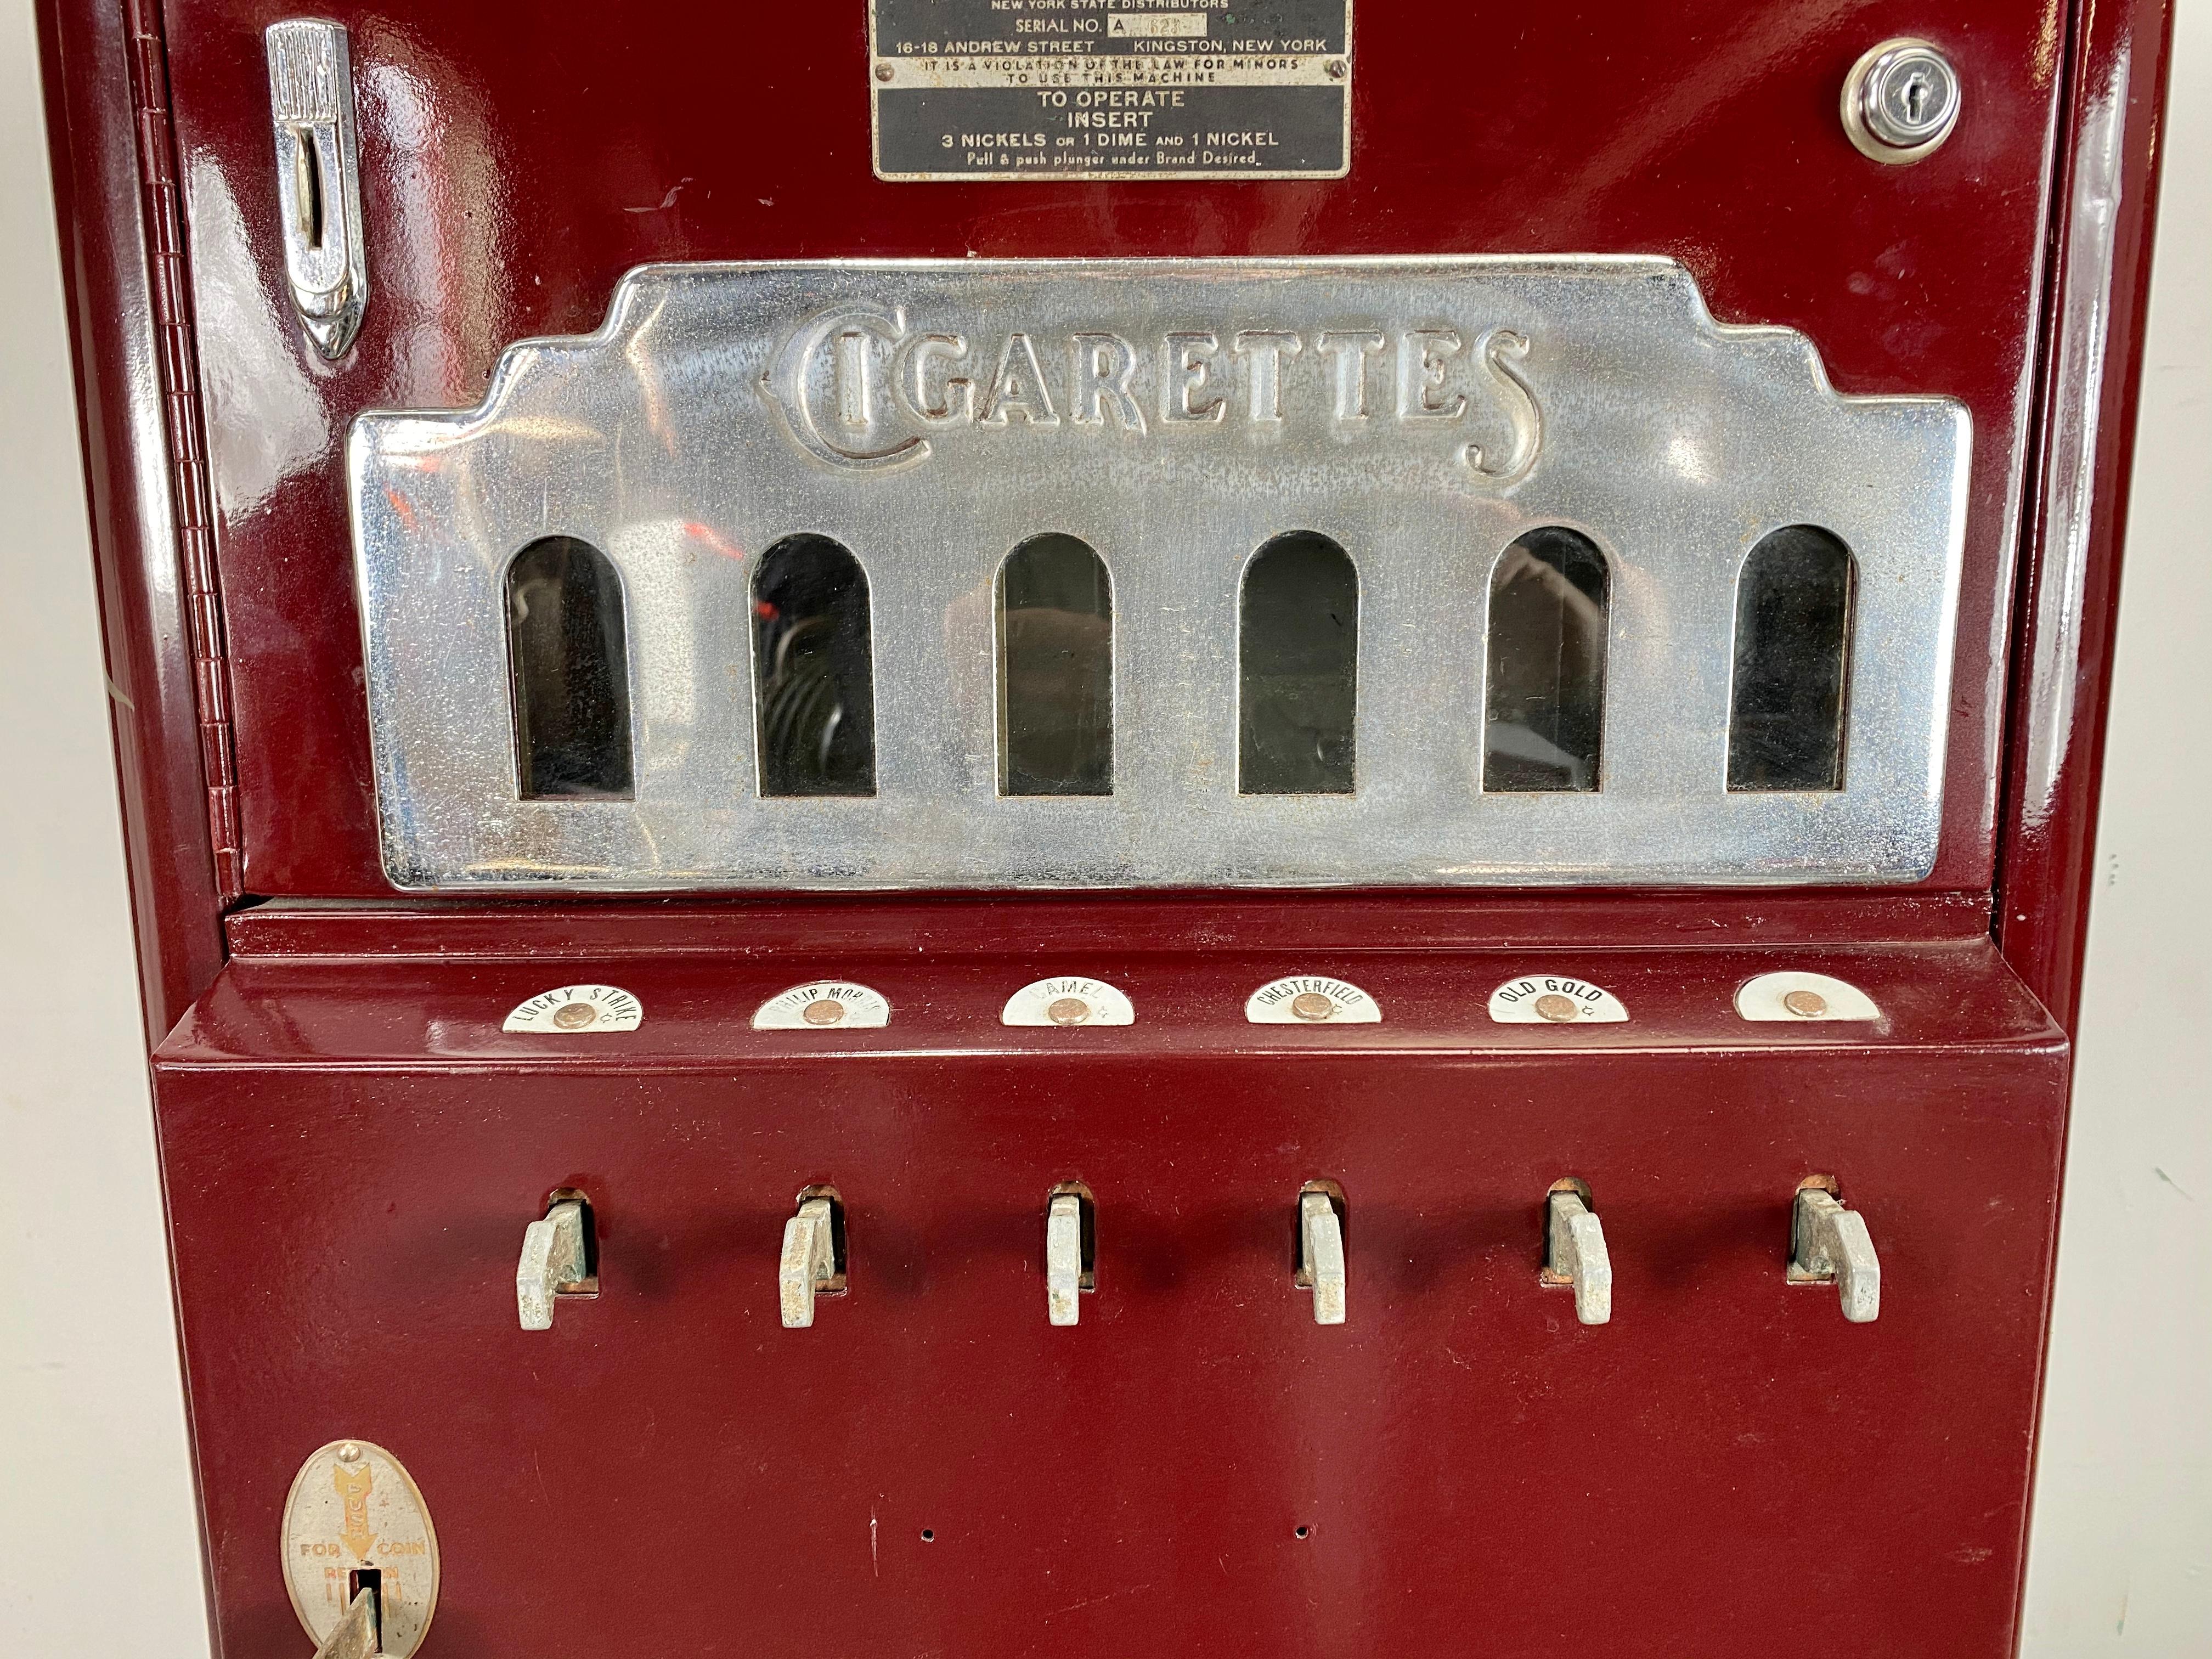 cigarette vending machine vintage